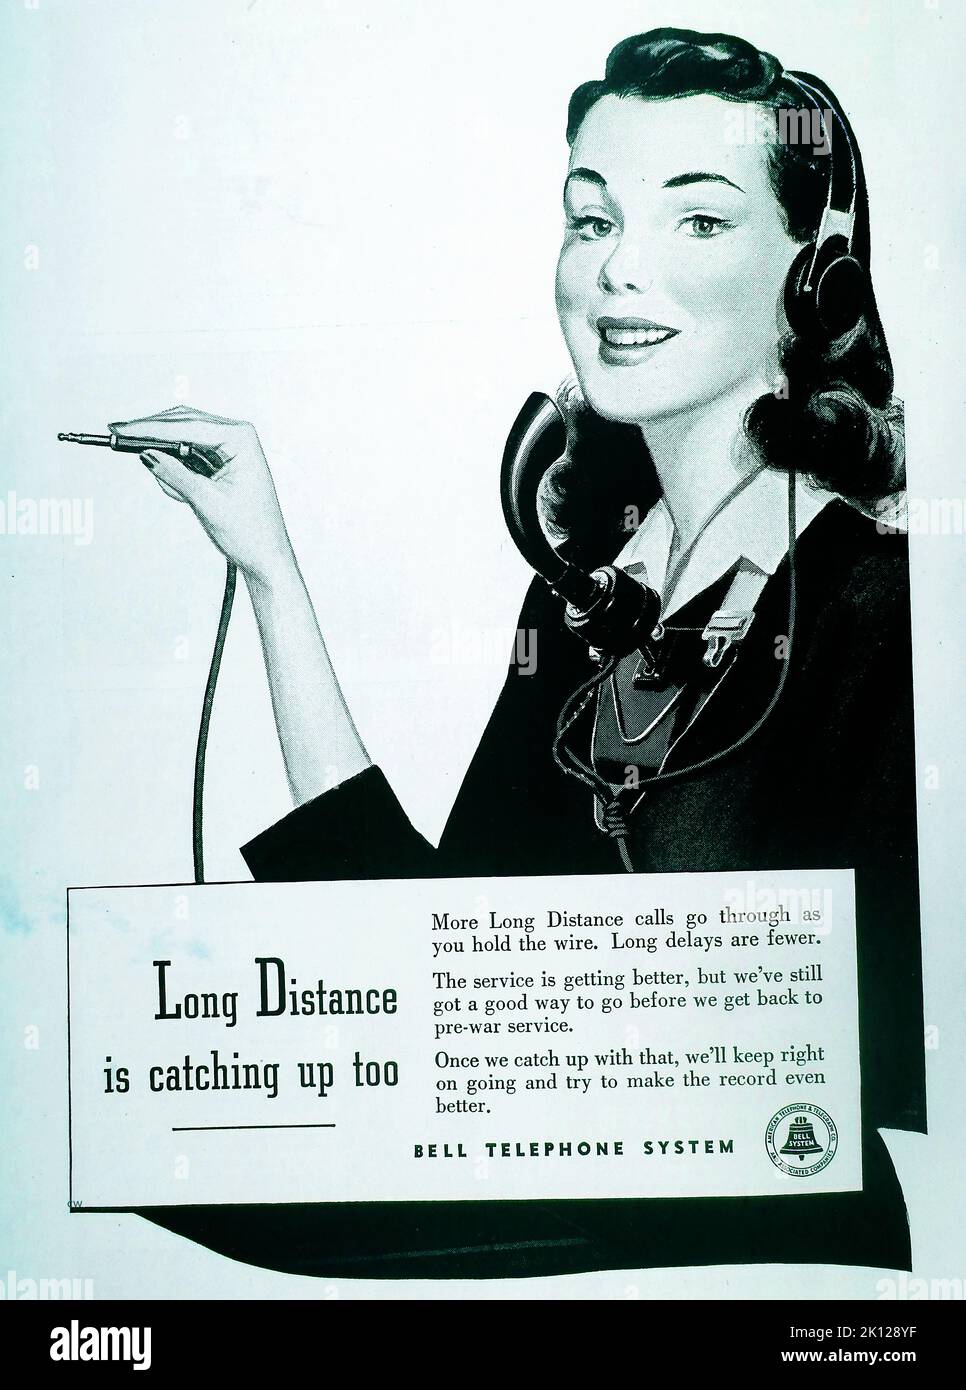 Une publicité américaine d'après-guerre de 1947 pour Bell Telephone Company / Bell Telephone System, disant que les connexions s'améliorent et seront bientôt de retour aux normes d'avant-guerre, y compris les appels longue distance. Banque D'Images